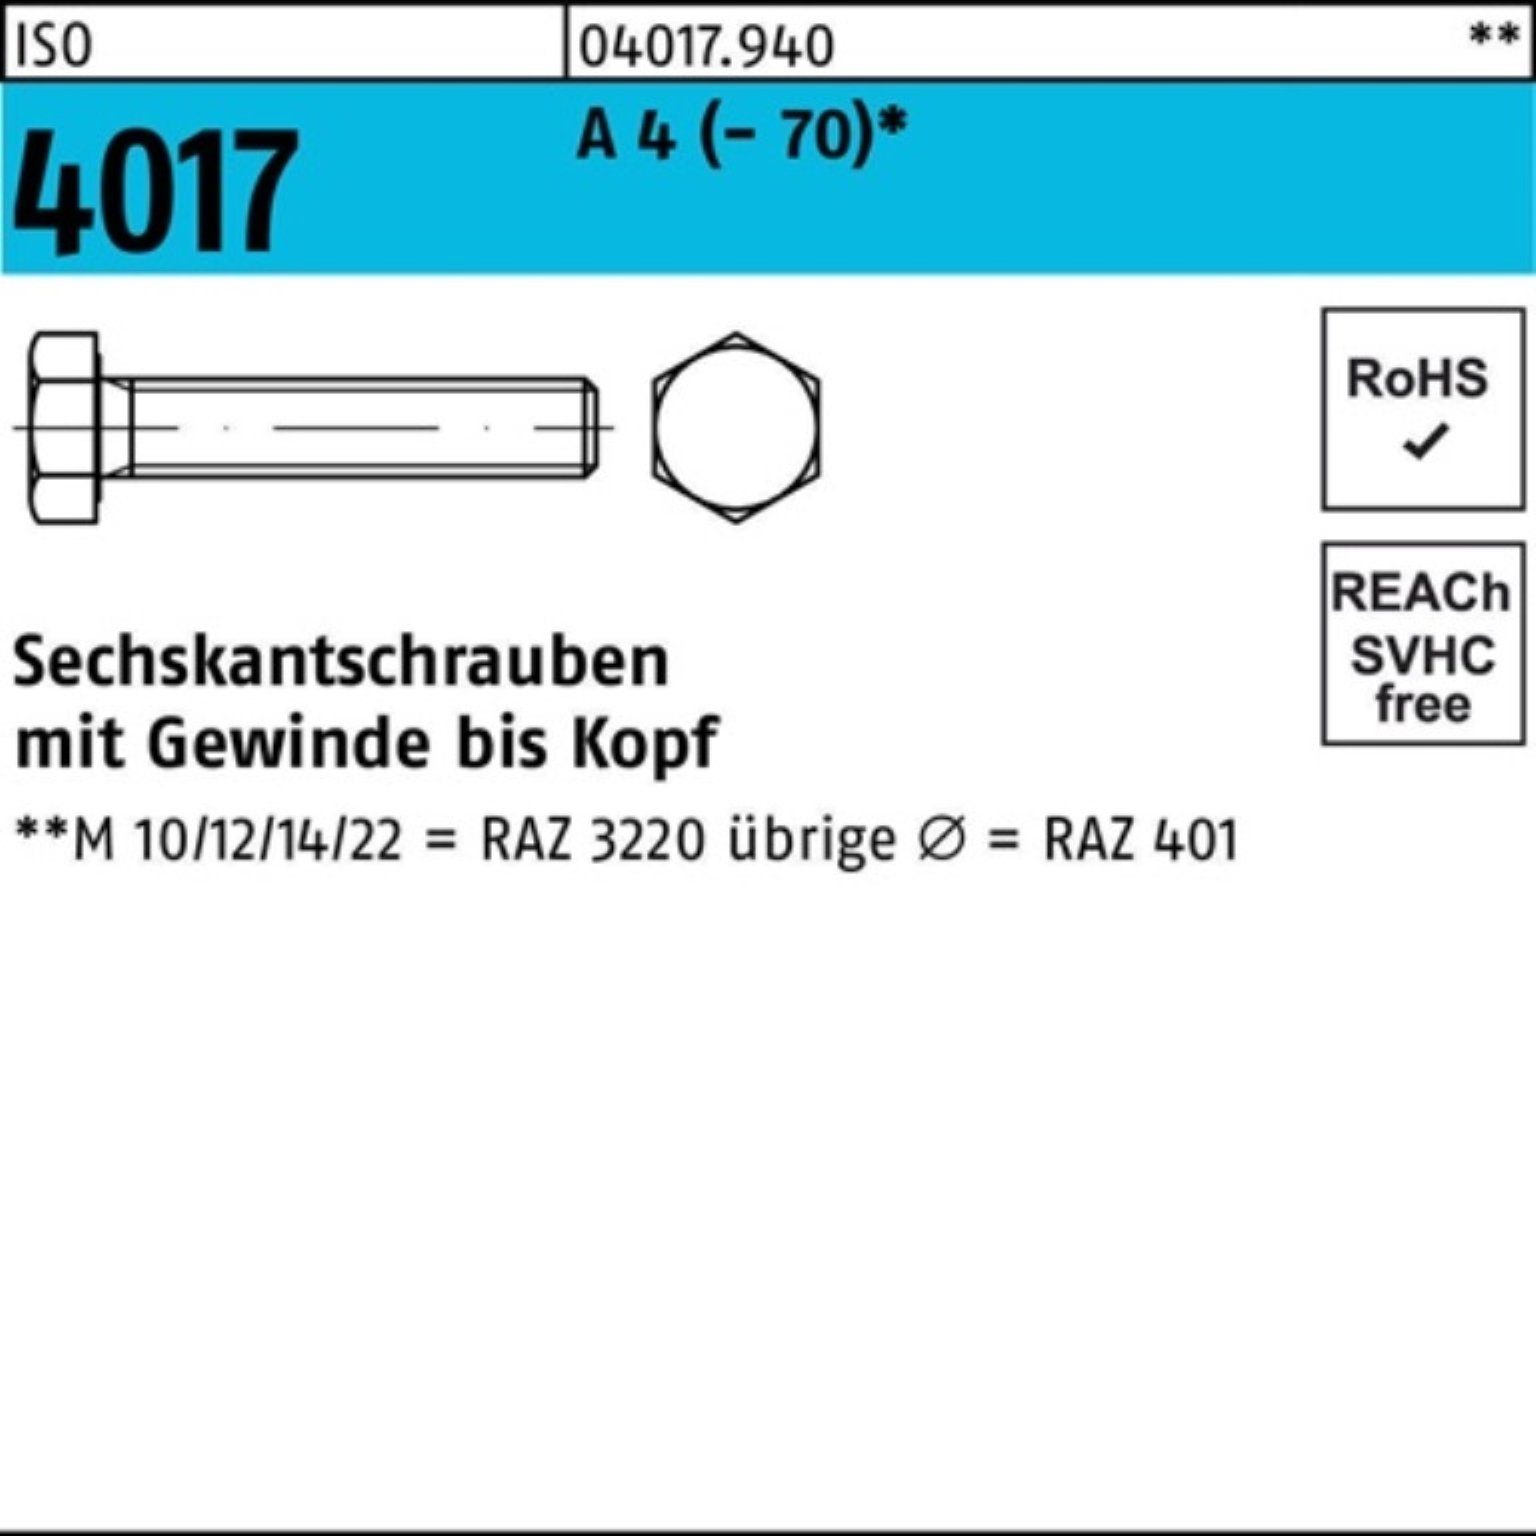 Bufab Sechskantschraube VG 75 Pack 25 ISO Sechskantschraube Stück M16x 4 A (70) 4017 100er